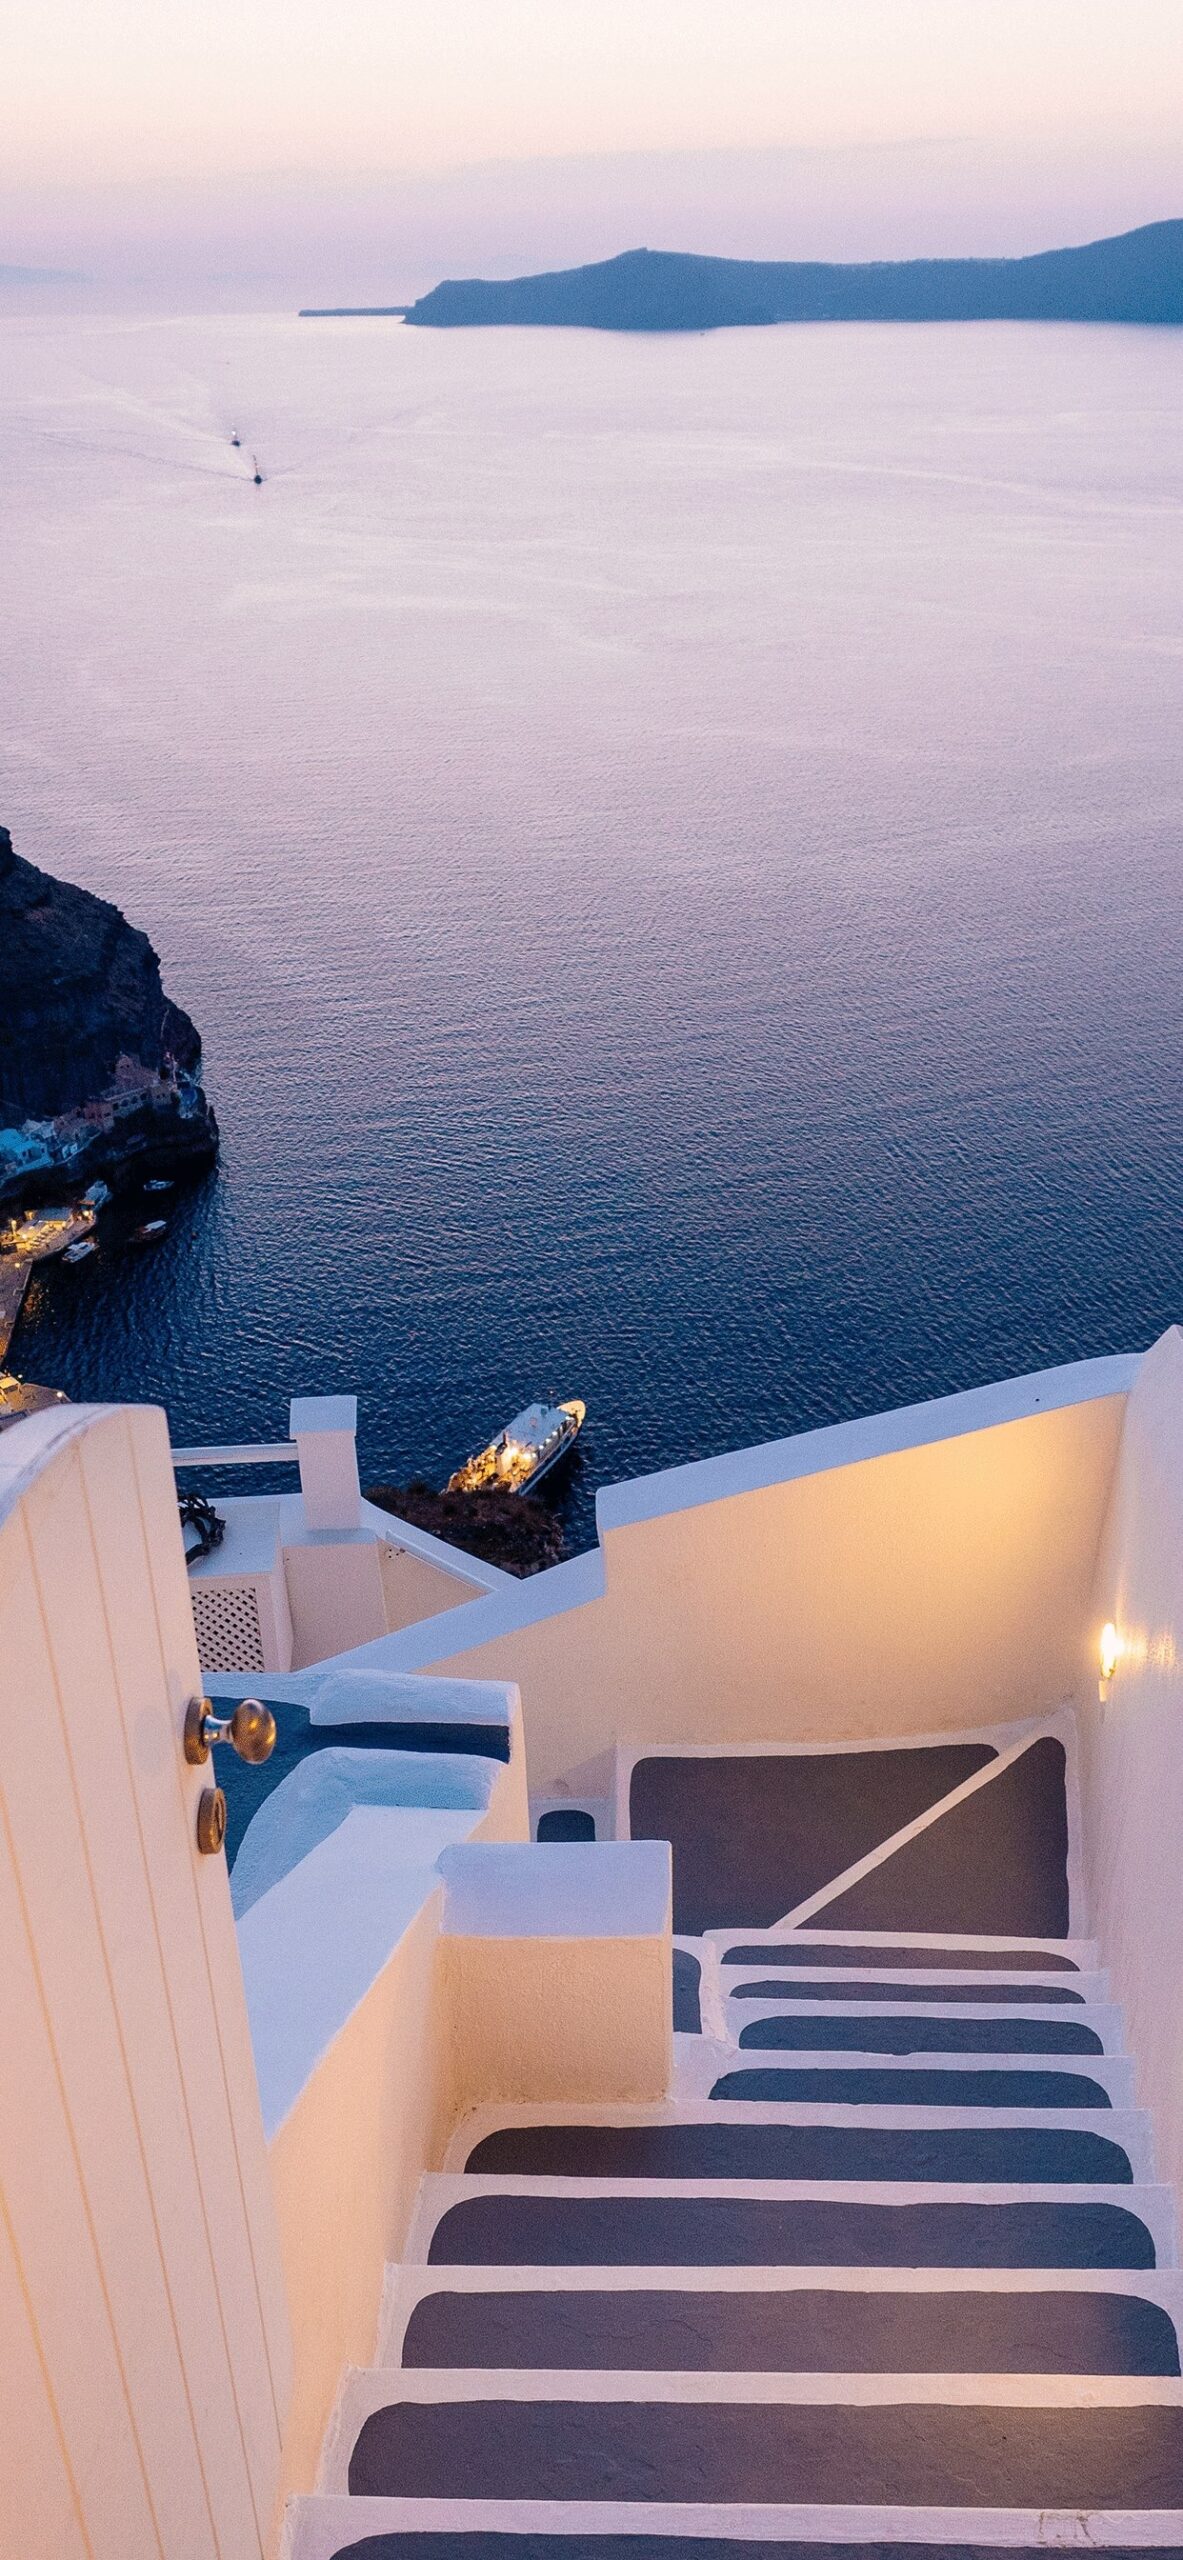 Top 35 Best Santorini iPhone Wallpapers  Gettywallpapers